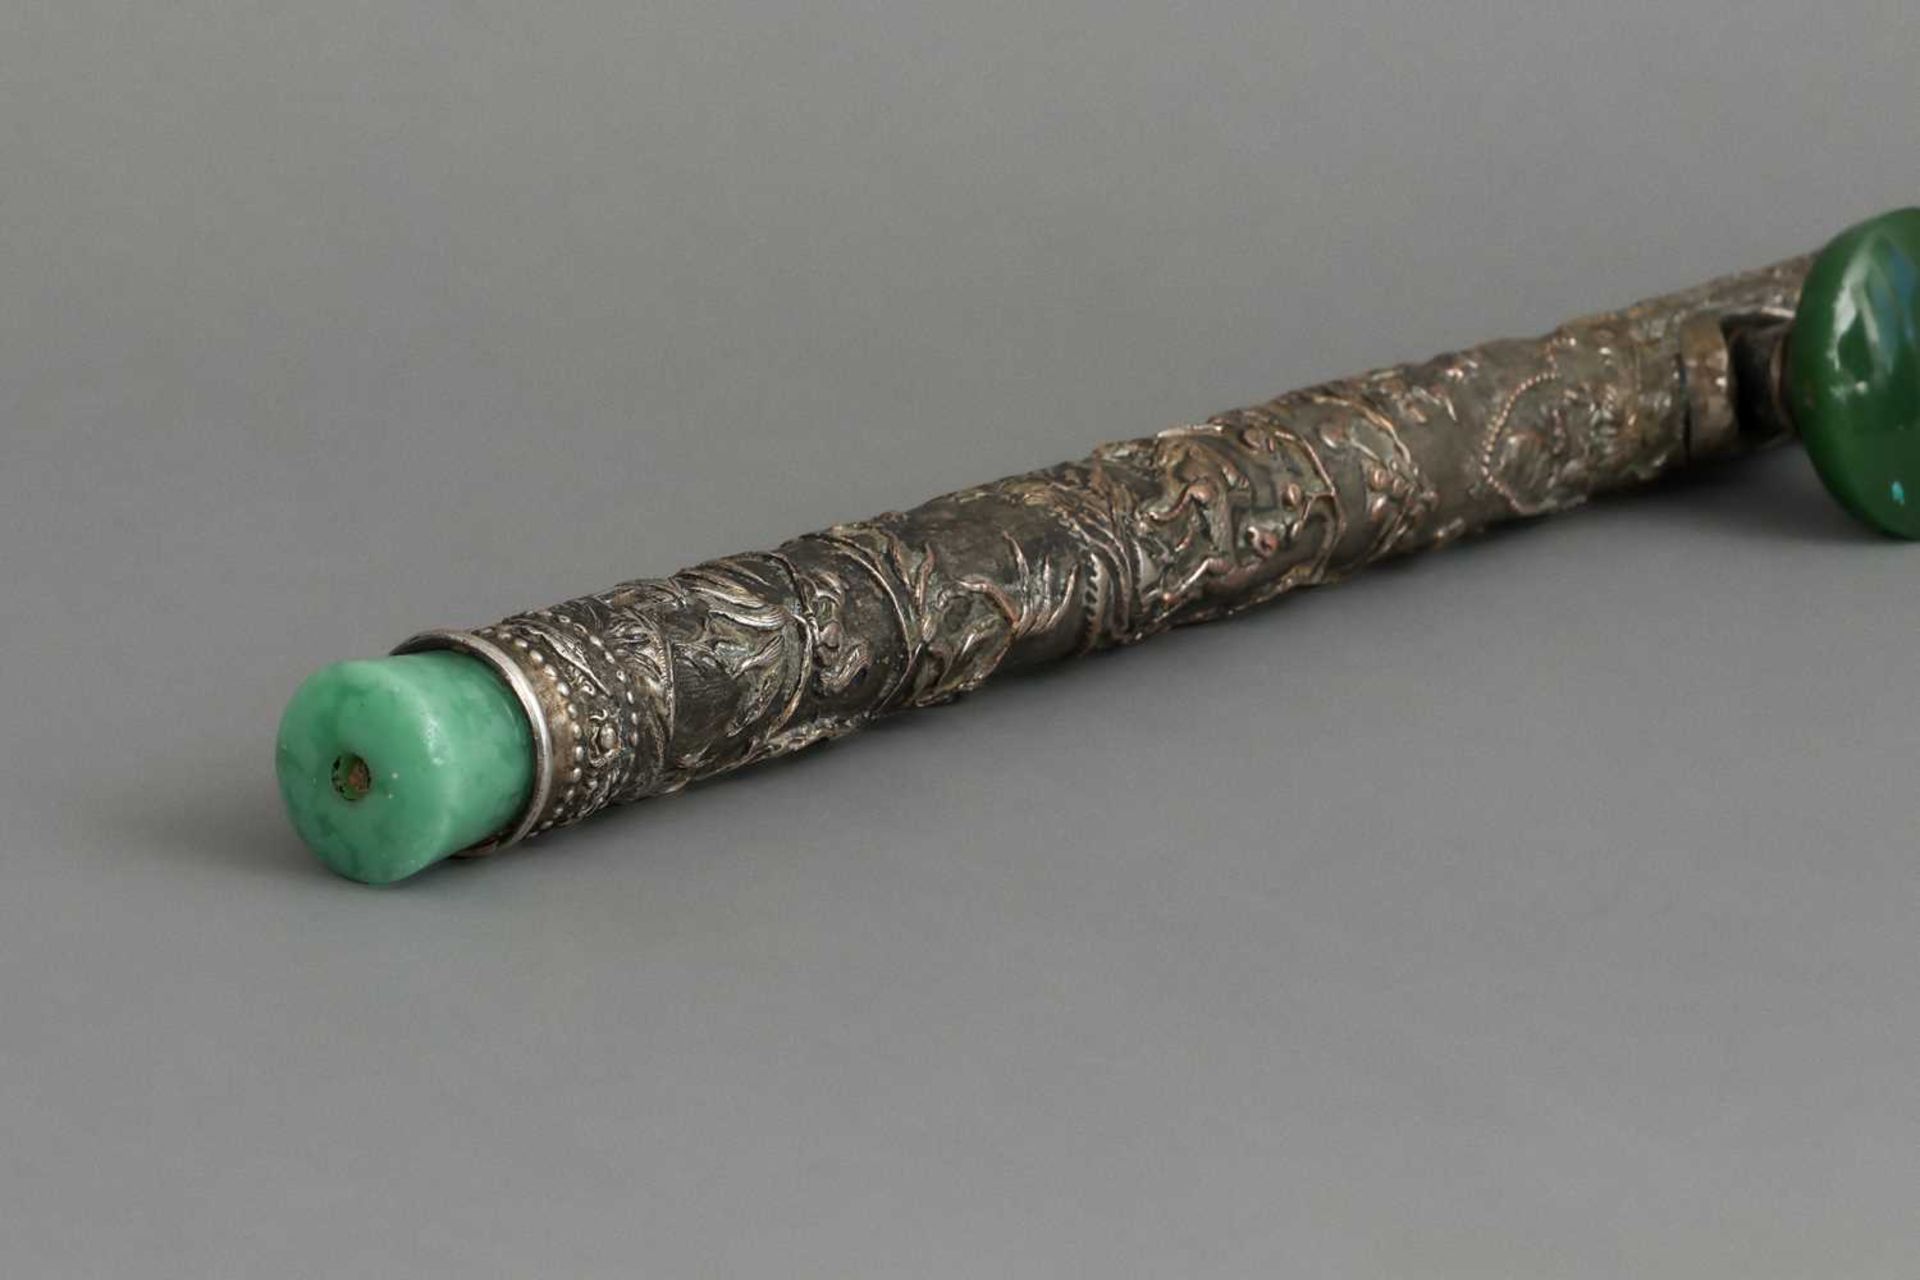 Chinesische Opiumpfeife der Qing Dynastie - Image 2 of 6